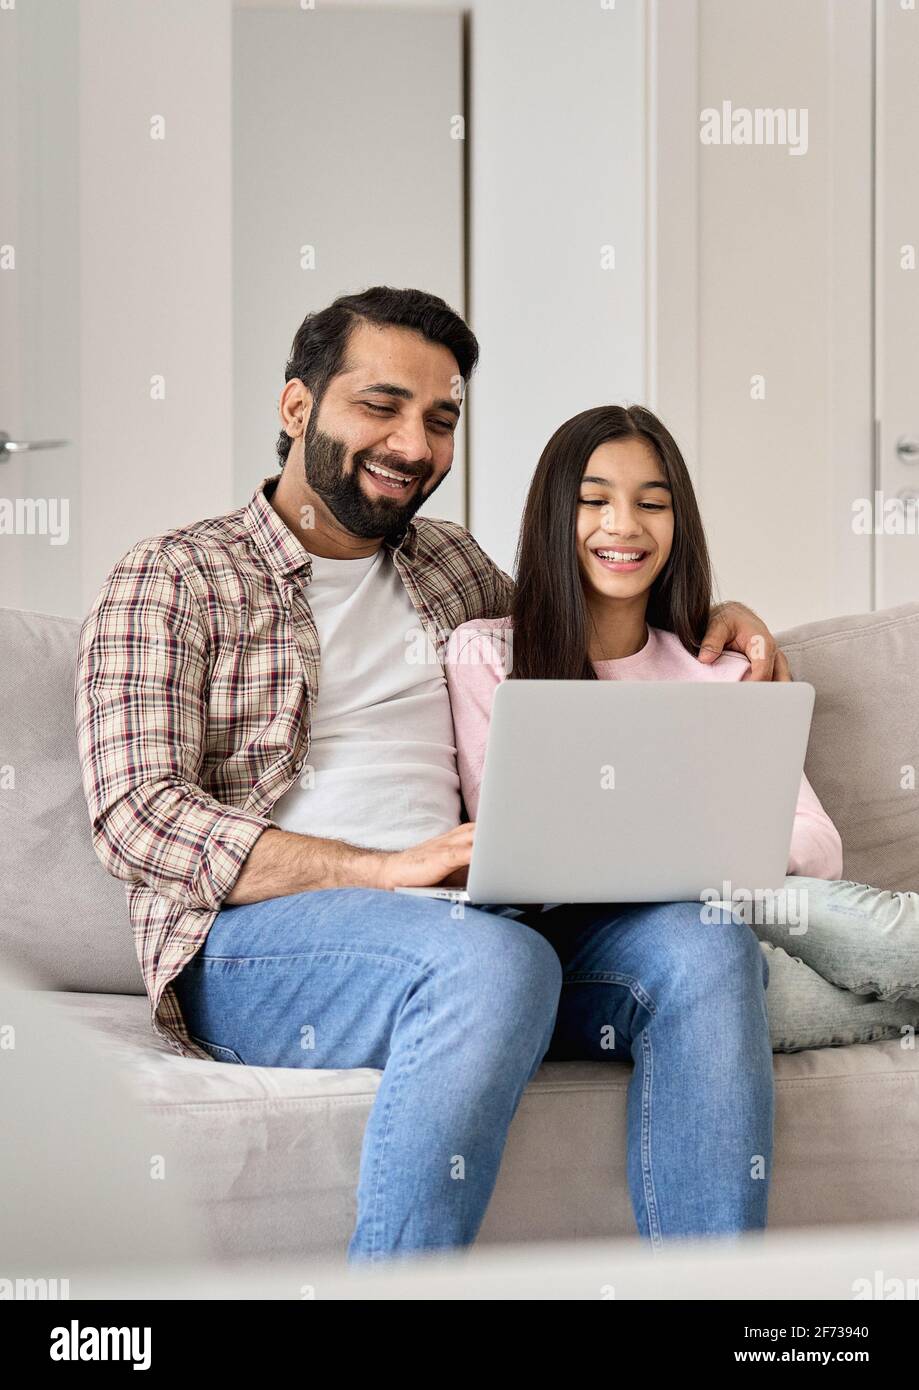 Papa indien heureux avec une fille adolescente s'amusant à utiliser un ordinateur portable à la maison. Banque D'Images